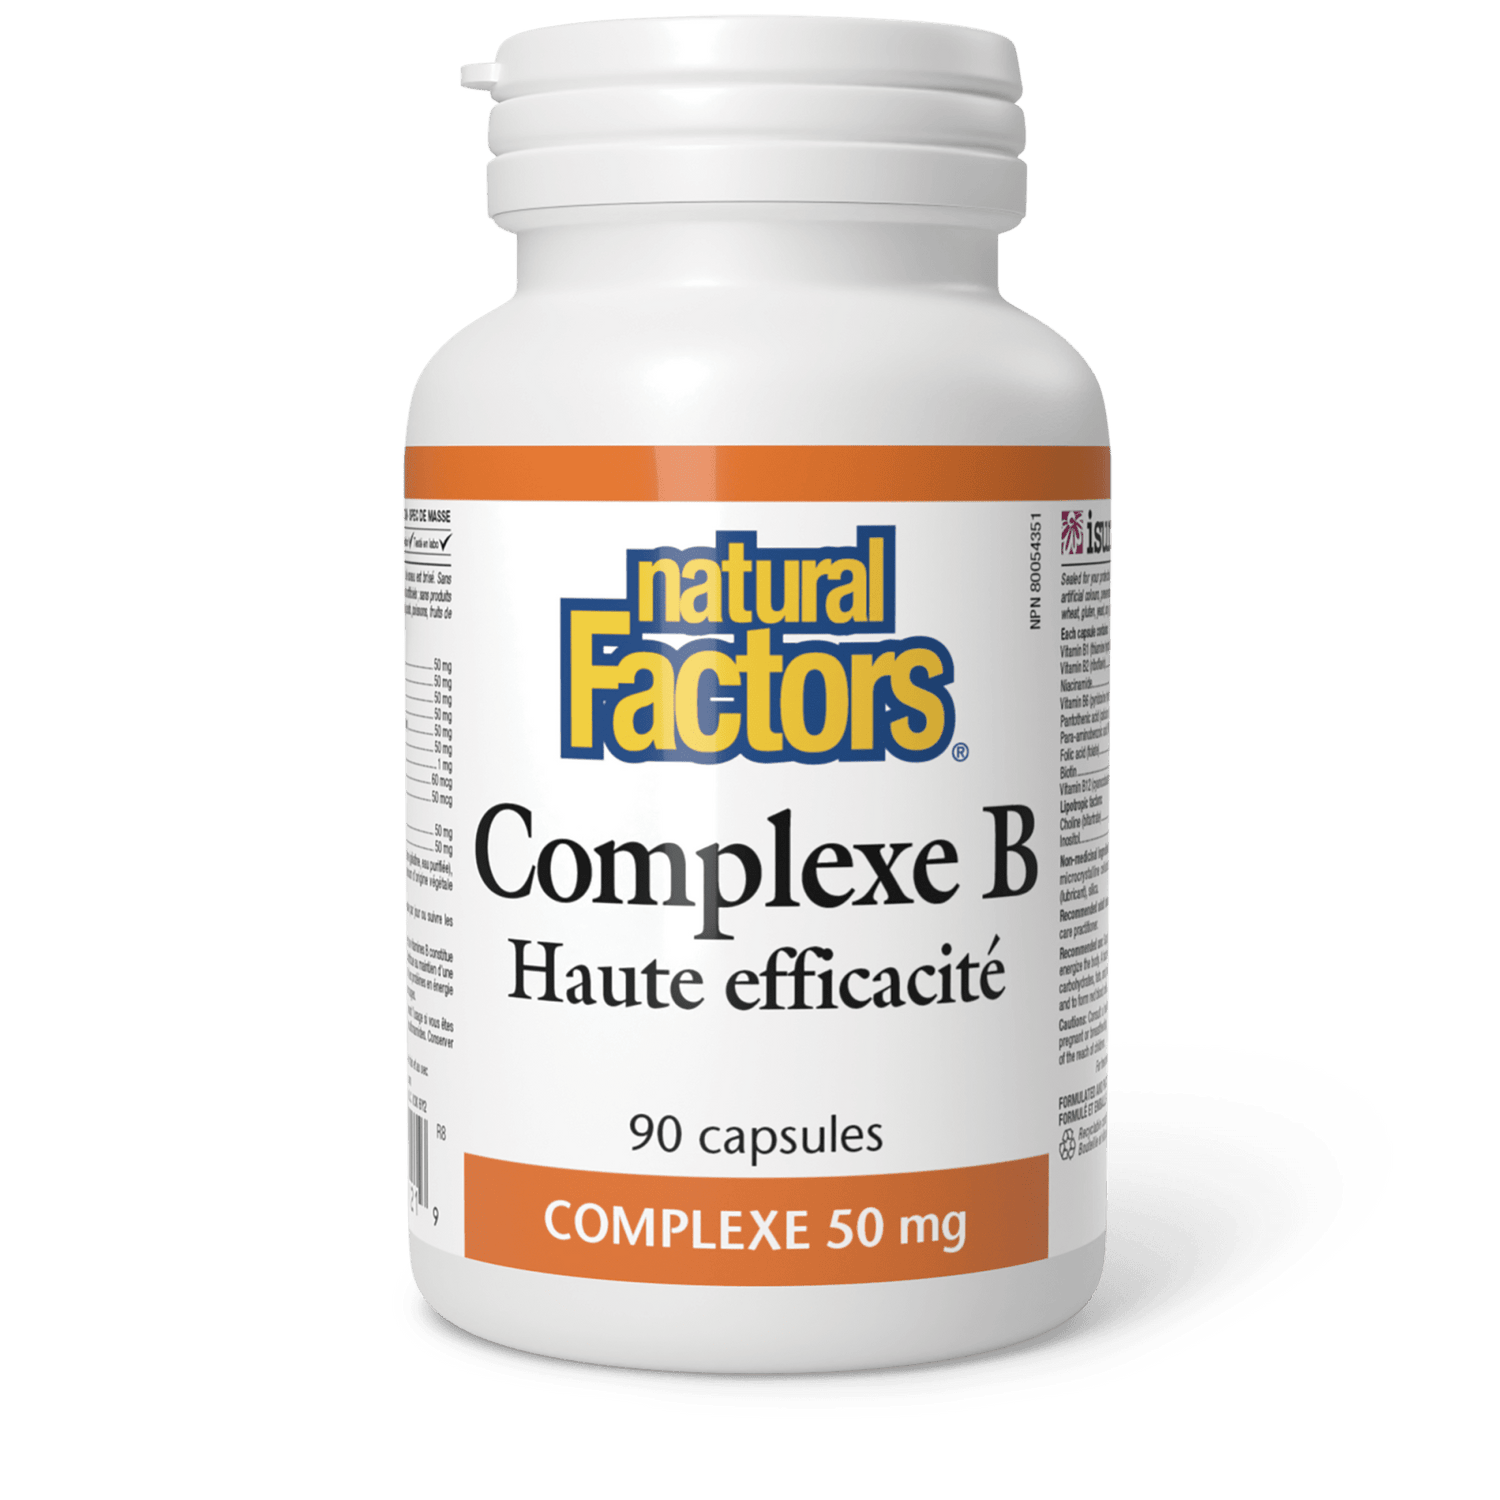 Complexe B Haute efficacité 50 mg, Natural Factors|v|image|1121